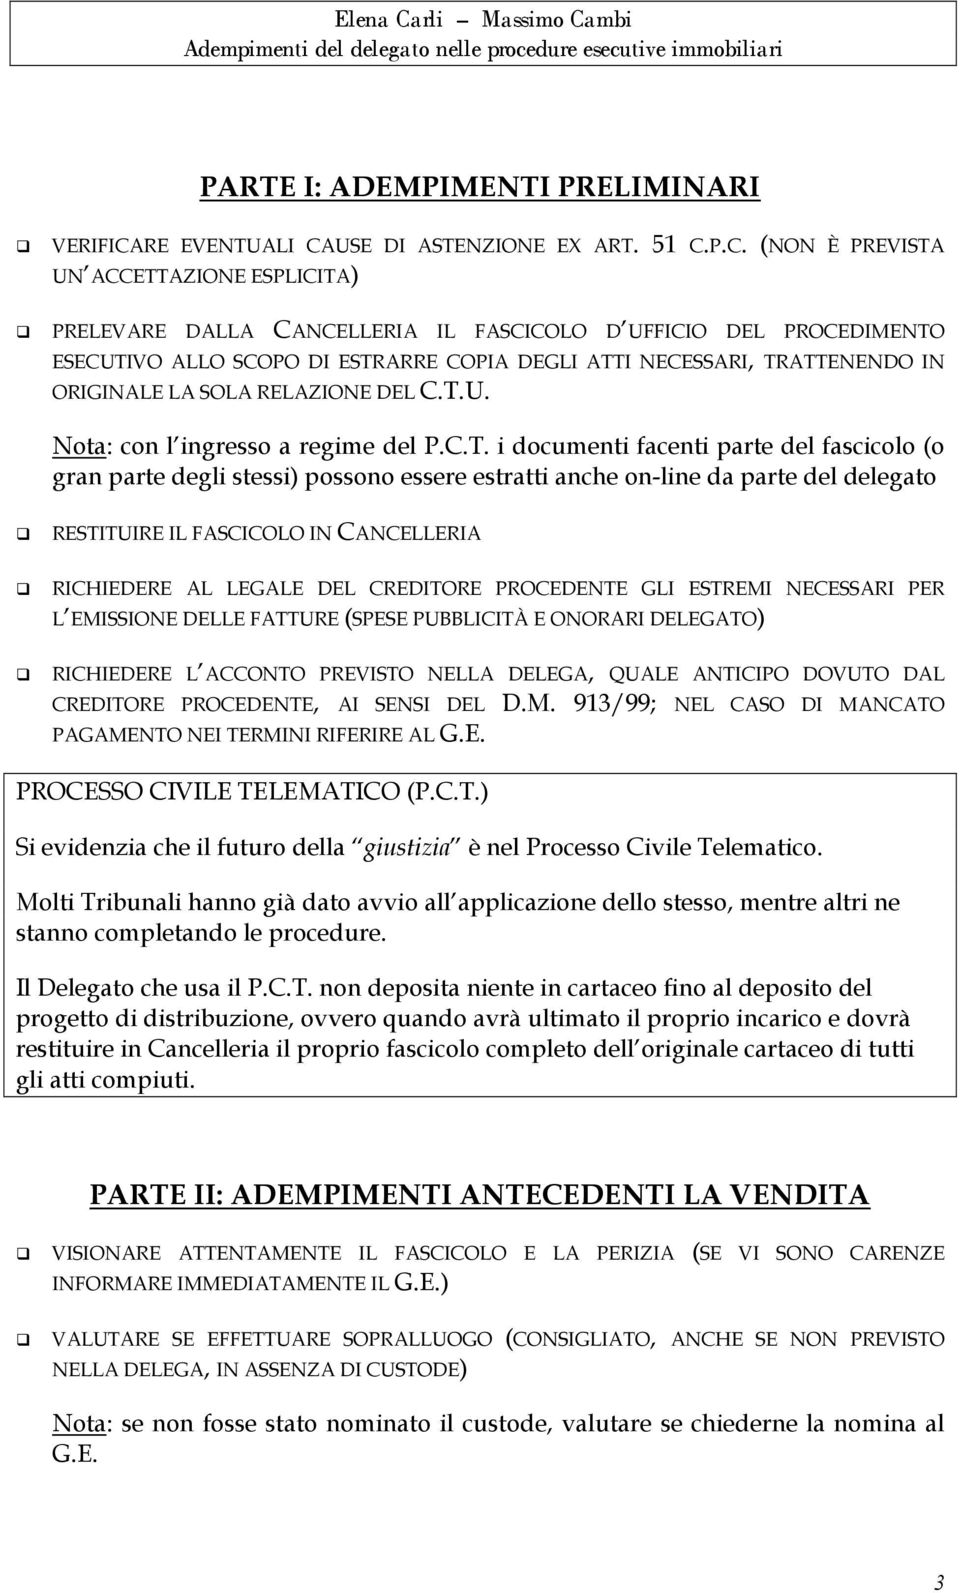 USE DI ASTENZIONE EX ART. 51 C.